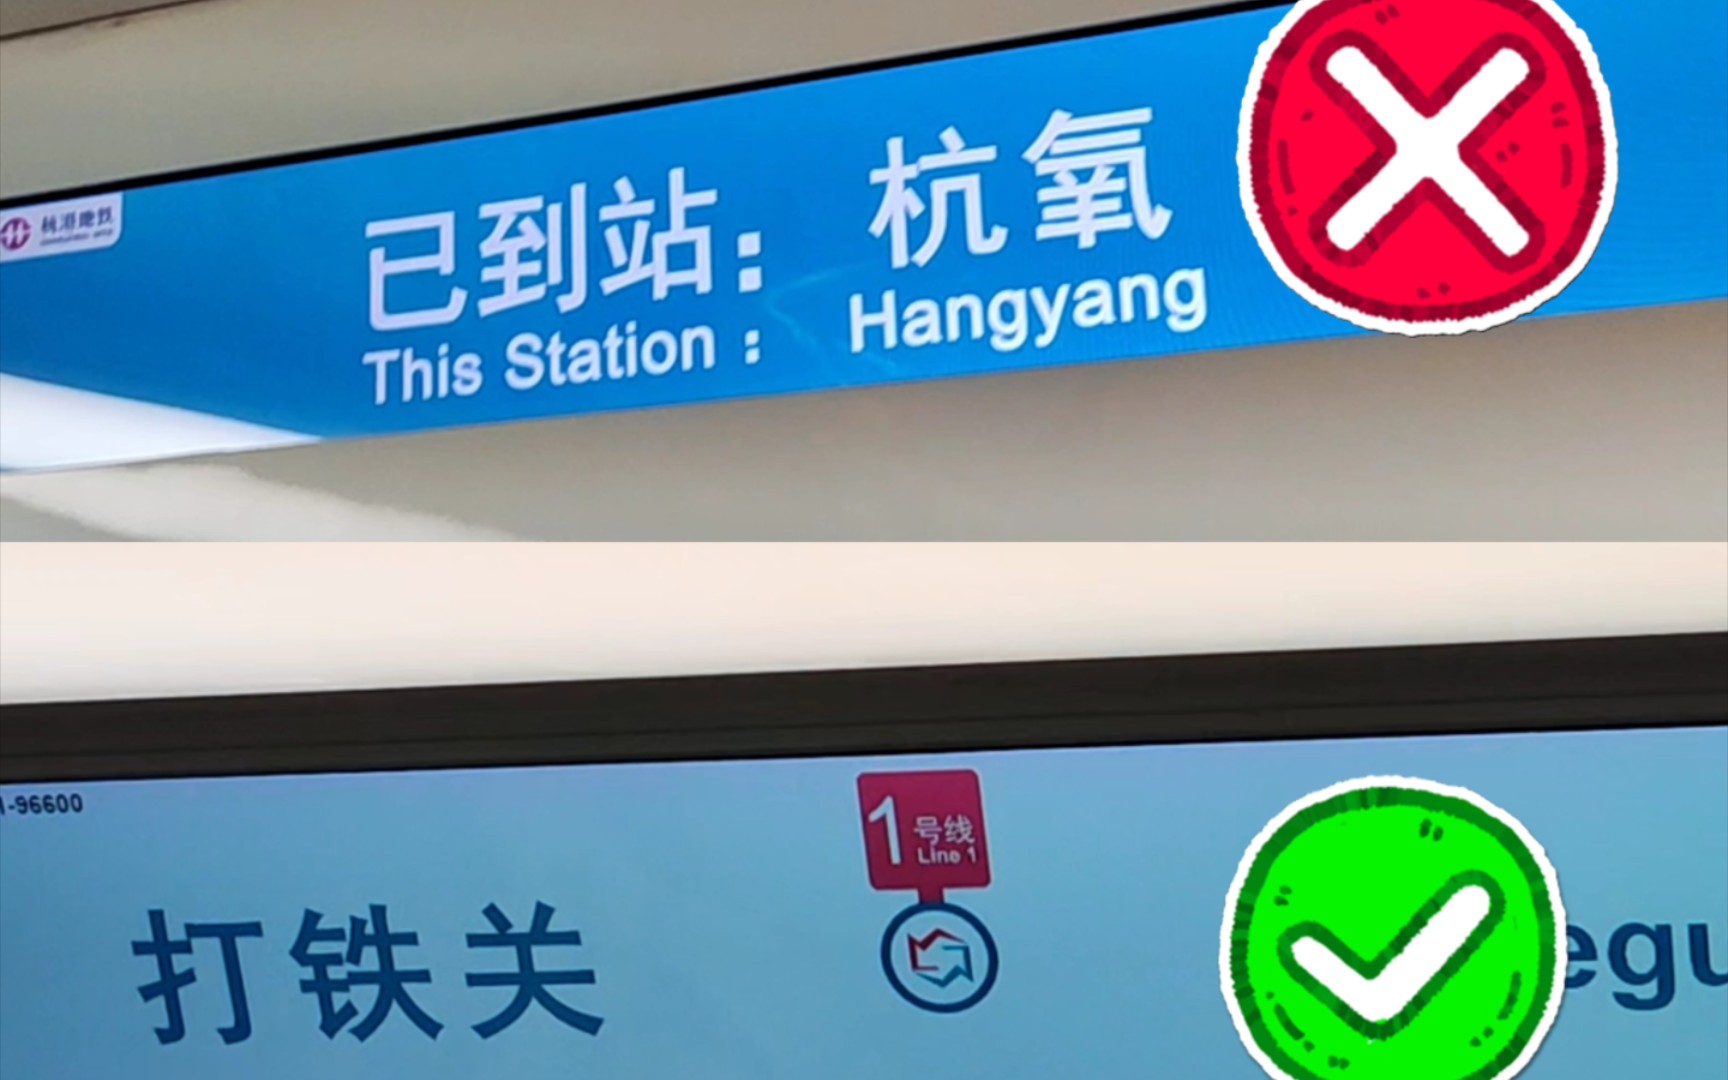 【杭州地铁】5号线某列车车厢连接处LCD屏显示错乱